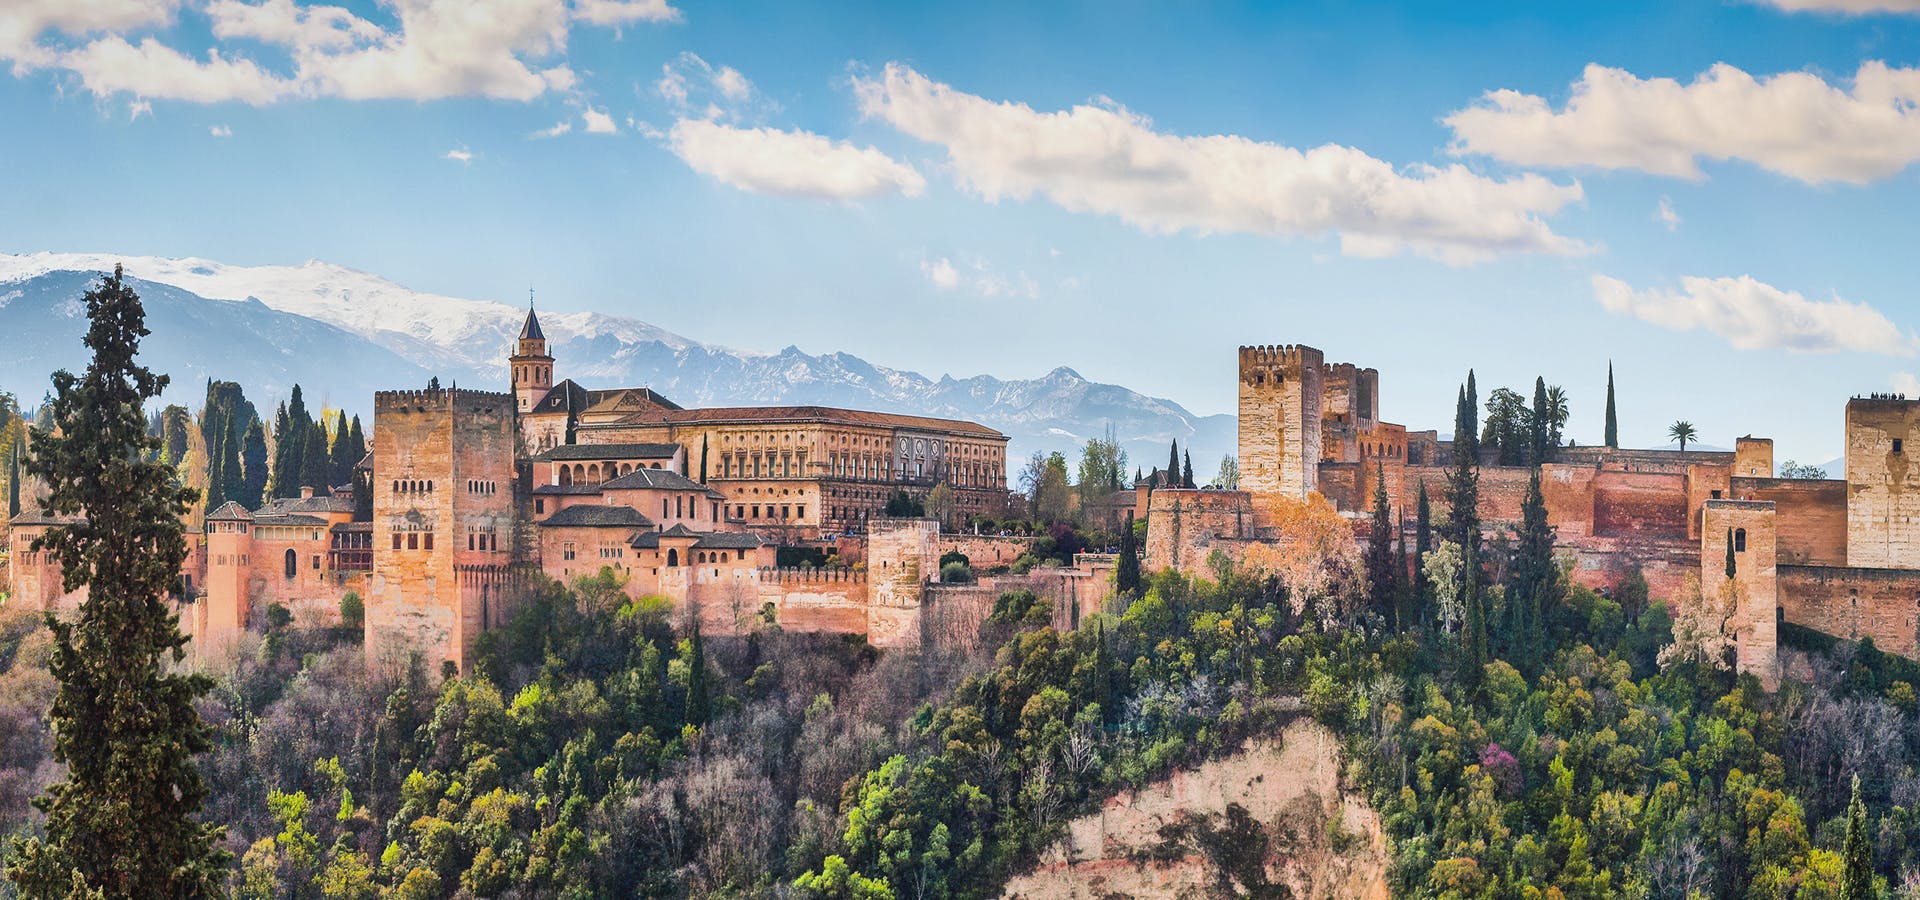 Tour und Tickets für die gesamte Alhambra (Palacios, Alcazaba, Generalife, Gärten)